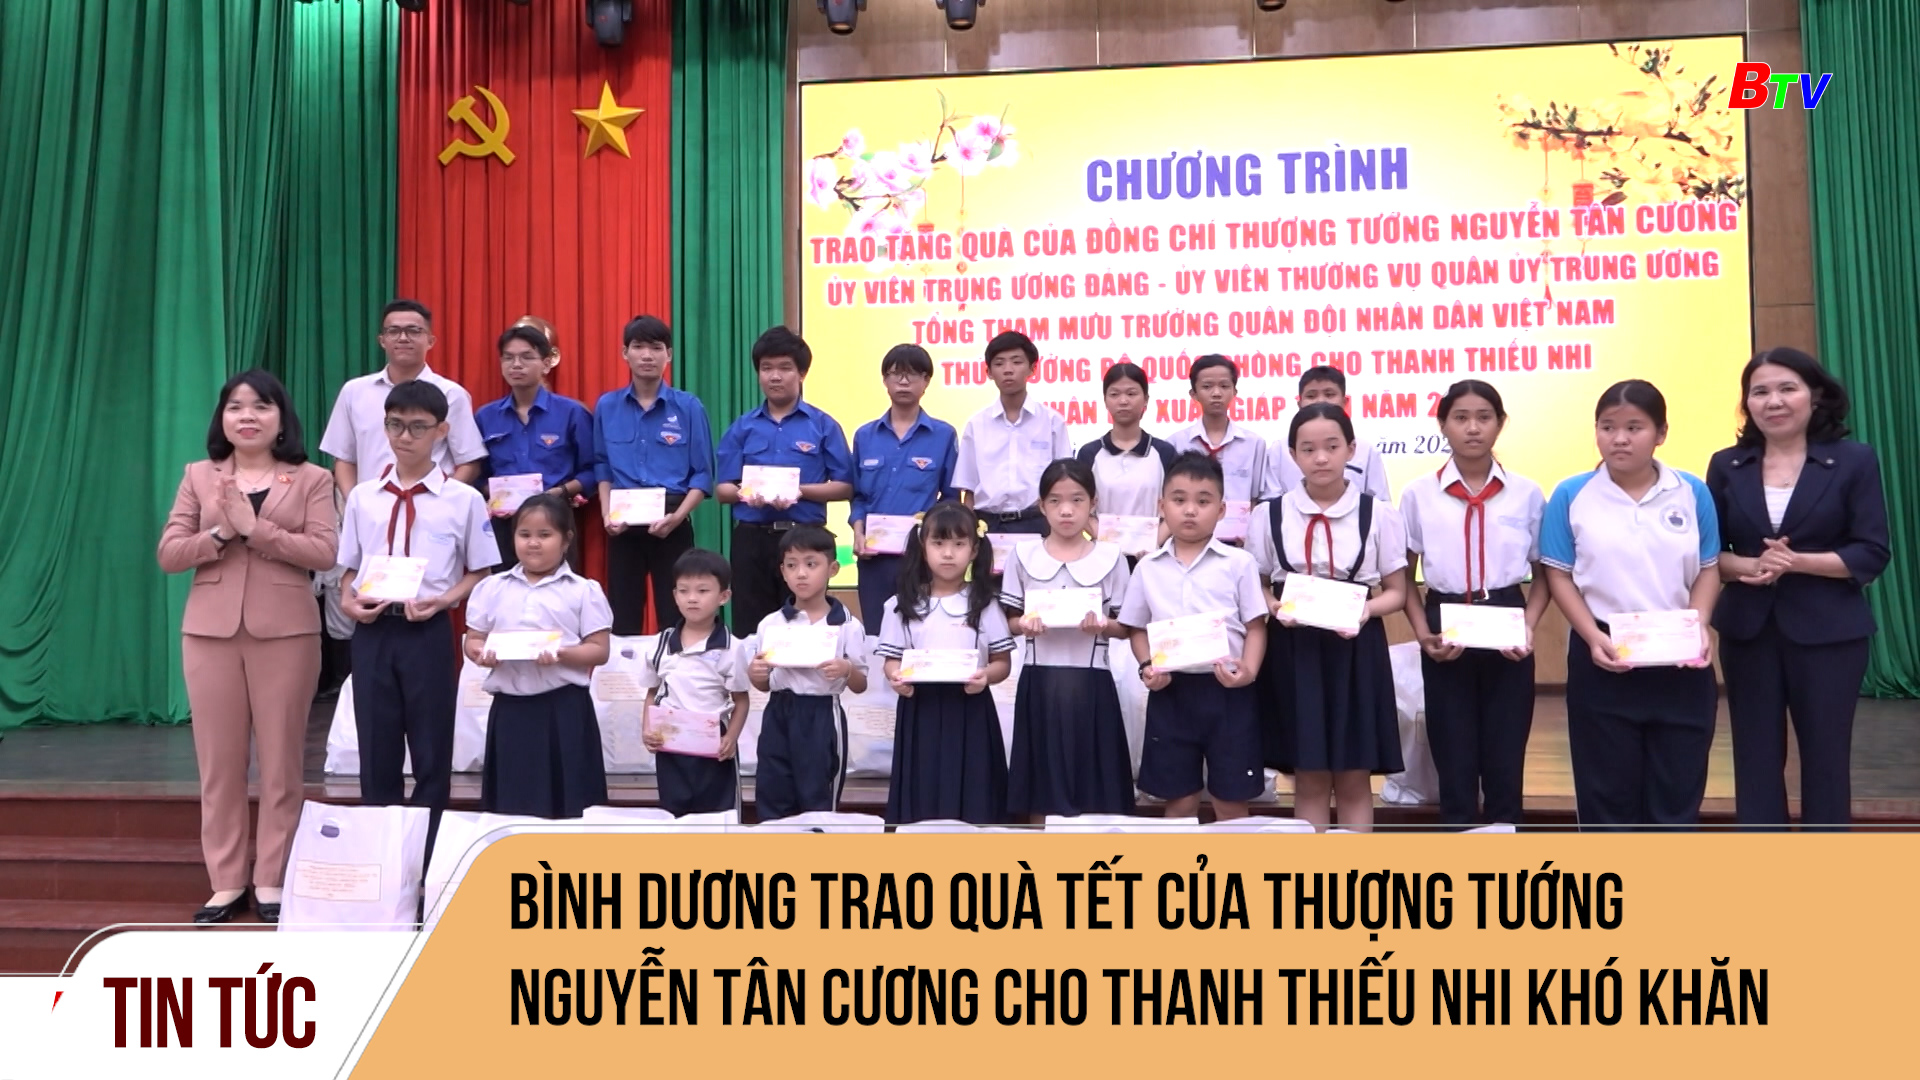 Bình Dương trao quà tết của Thượng tướng Nguyễn Tân Cương cho thanh thiếu nhi khó khăn